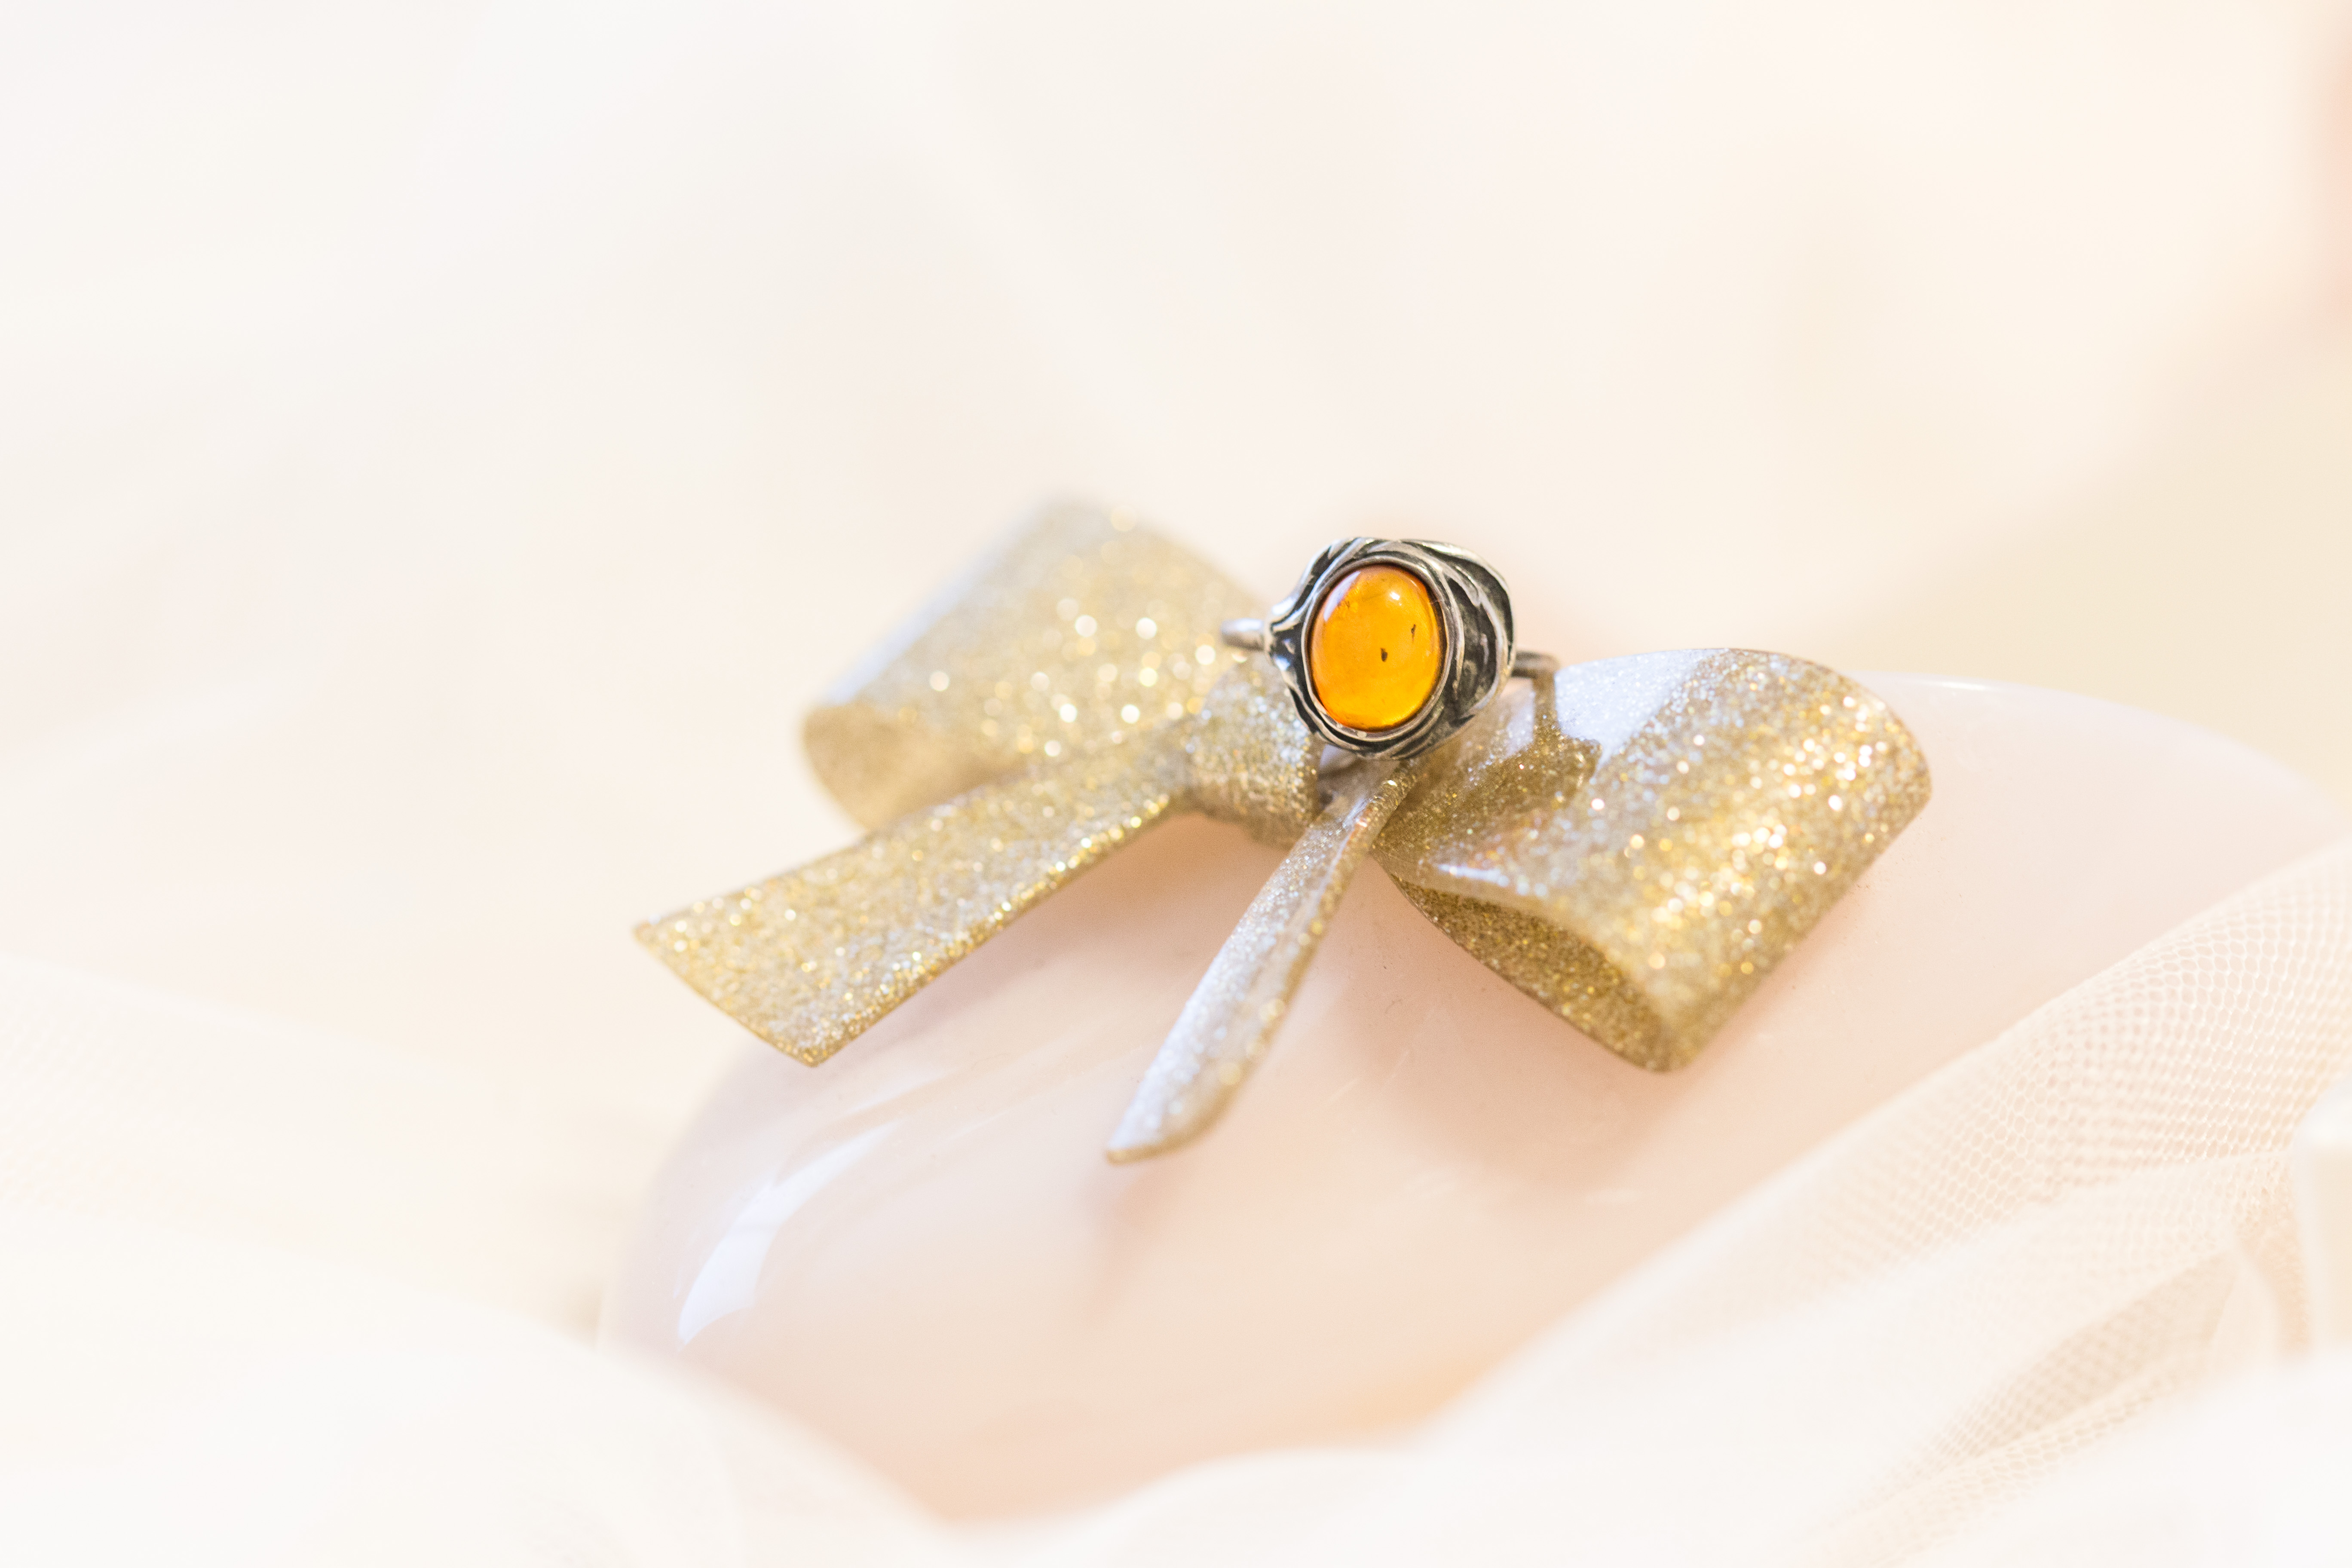 amber stone ring detail shot on melissa shoes walking on a cloud vegan flat